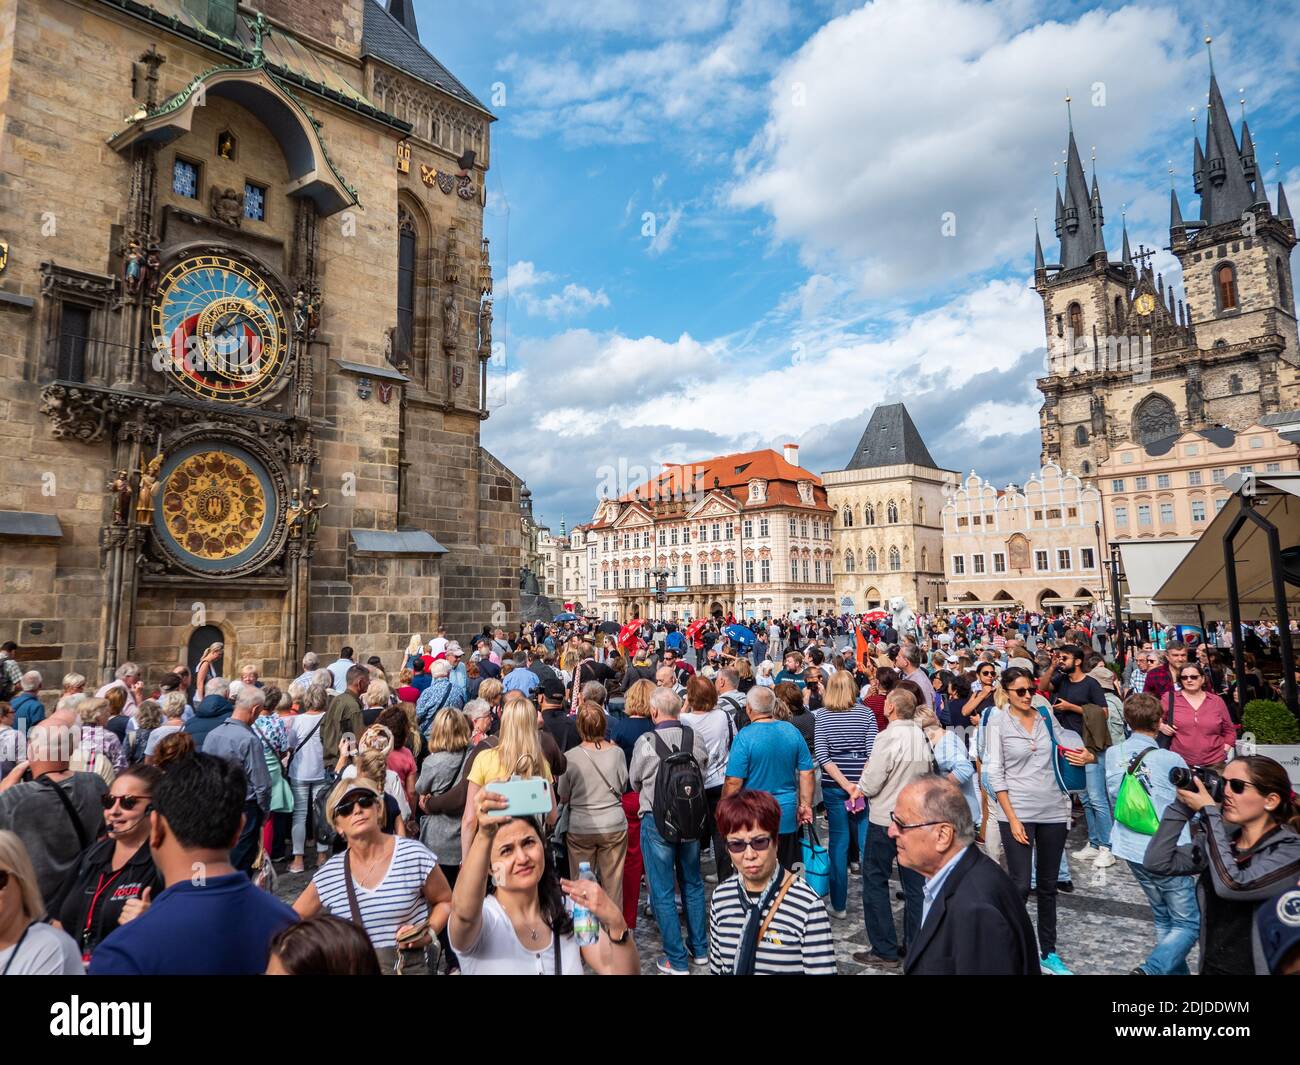 Turisti di Praga. Una trafficata Piazza della Citta' Vecchia nel centro di Praga con l'orologio astronomico e i punti di riferimento della Chiesa di Tyn in vista. Foto Stock